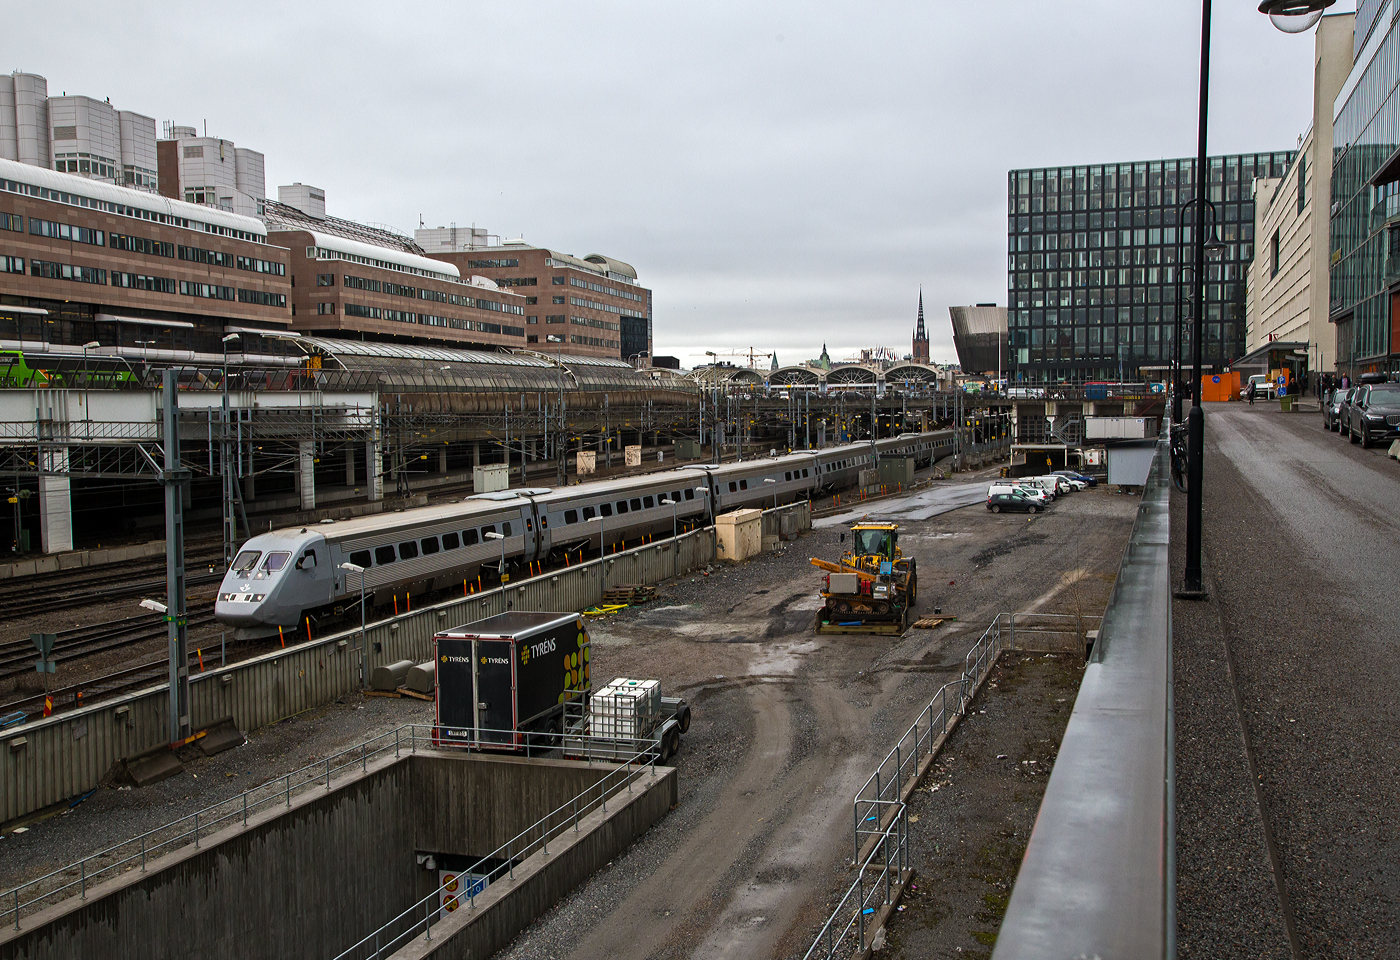 Steuerwagen voraus verlsst der siebenteilige (einsystem) SJ X2 Hochgeschwindigkeitstriebzug Snabbtg (SJ X2000) der SJ (Statens Jrnvgar AB, ehemaligen schwedische Staatsbahnen) am 21 Mrz 2019 den Bahnhof Stockholm Central (Stockholm Hbf) in Richtung Norden. Am Zugschluss war der Triebkopf X2 2016 (S-SJ 93 74 302 2016-3). Diese reinen einsystem Triebzge sind fr das schwedische Stromsystem 15 kV mit 16⅔ Hz konzipiert, und werden somit nicht (wie die X2K) fr den Verkehr nach Dnemark eingesetzt.

Die Baureihe SJ X2 sind Hochgeschwindigkeitszge der schwedischen Staatsbahngesellschaft SJ AB. Sie sind allgemein unter dem Markennamen X2000 bekannt. Ein Zug besteht aus einem Triebkopf, vier bis fnf Mittelwagen (UA2, UB2 oder URB2) und einem Steuerwagen (UB2X). In einem der Mittelwagen befindet sich ein Zugrestaurant/-bistro (URB2/URB2A). Die Vielfachsteuerung ermglicht, zwei Einheiten zu kuppeln. 

Durch die im Vergleich zu Mitteleuropa gnzlich andere Bevlkerungsstruktur in Schweden bot es sich nicht an, teure Hochgeschwindigkeitsstrecken zu bauen. Die hgelige und bergige Landschaft Schwedens verteuerte Neubaustrecken noch zustzlich. Daher entschieden sich die Schwedischen Staatsbahnen (SJ) fr einen Triebzug der Baureihe X2 mit Neigetechnik, mit dem bestehende Strecken schneller befahren werden knnen. Die Bezeichnung X2000 wurde als Produktname des Hochgeschwindigkeitsverkehrs gewhlt. Wobei an den Bahnhofs-Anzeigen sucht man vergeblich an dieser Bezeichnung, sondern sie werden als Snabbtg (deutsch Schnellzug) angezeigt.

Die Zge sind vollklimatisiert. Die vorgesehene fahrplanmige Hchstgeschwindigkeit liegt bei 200 km/h, die Zge waren technisch fr 210 km/h ausgelegt. Jeder Triebkopf besitzt vier Drehstrom-Asynchronmotoren. Die Steuerung erfolgt mittels GTO-Thyristoren mit einer Frequenz zwischen 0 und 120 Hz. Die maximale Achslast liegt bei 18,5 Tonnen.

Die Neigetechnik wird richtungsabhngig von einem Beschleunigungsmesser im fhrenden Fahrzeug gesteuert. Der Neigungswinkel ist abhngig von Geschwindigkeit und Bogenradius, er wird in jedem Wagen an den Drehgestellen gemessen und hydraulisch eingestellt. Die Neigung liegt bei maximal 6,5 Grad, bei einer Neigungsnderung von hchstens vier Grad pro Sekunde. Bei Geschwindigkeiten unter 70 km/h ist die Neigetechnik nicht aktiv. Die Technik wird so eingeschrnkt, dass ein Reisender auf einem Eckplatz des Wagens nie 30 cm hher oder tiefer als ein anderer im selben Wagen sitzt. Die Triebkpfe selbst verfgen ber keine Neigetechnik. Ein besonderer Lokfhrersitz mit verstrktem Seitenhalt gleicht die erhhte Seitenbeschleunigung aus.

Eine Besonderheit der Zge ist die radiale Einstellbarkeit der einzelnen Achsen in jedem Drehgestell. Auf den bogenreichen Strecken Schwedens kann sich so jede Achse einzeln der Strecke anpassen. Dadurch reduziert sich die Reibung erheblich, was zu Einsparungen beim Energieverbrauch und geringerem Materialverschlei fhrt.

Der Zug hat sprbare Auswirkungen auf die SJ und den schwedischen Schienenverkehr hinterlassen. Steigende Passagierzahlen, verbunden mit sinkenden Betriebsausgaben bei gleichzeitig beschleunigten und effizienteren Einstzen halfen den SJ, profitabel zu werden.

TECHNISCHE DATEN:
Hersteller: ABB, Vsters (spter ADtranz), Kalmar Verkstad (Kalmar)
Baujahre: 1989 bis 1998
Gebaute Garnituren: 43
Spurweite: 	1435 mm (Normalspur)
Achsformel TK: Bo'Bo' (Triebkopf)
Lnge ber Kupplung: 139,4 m (fnfteilig+TK) / 164,4 m (sechsteilig+TK)
Lnge ber Kupplung vom Triebkopf (X2): 17.397 mm
Lnge ber Kupplung der Mittelwagen (UA2, UB2 und URB2): 24.950 mm
Lnge ber Kupplung der Steuerwagen (UB2X): 22.447 mm
Leergewicht: 344 t (fnfteilig) / 391 t (sechsteilig)
Hchstgeschwindigkeit: 200 km/h
Dauerleistung: 3.260 kW (4 x 815)
Anfahrzugkraft: 160 kN
Stromsystem: 15 kV 16,7 Hz AC (BR X2K zus. 25kV/50Hz AC)
Sitzpltze: 	263 (fnfteilig+TK) / 311 (sechsteilig+TK)
